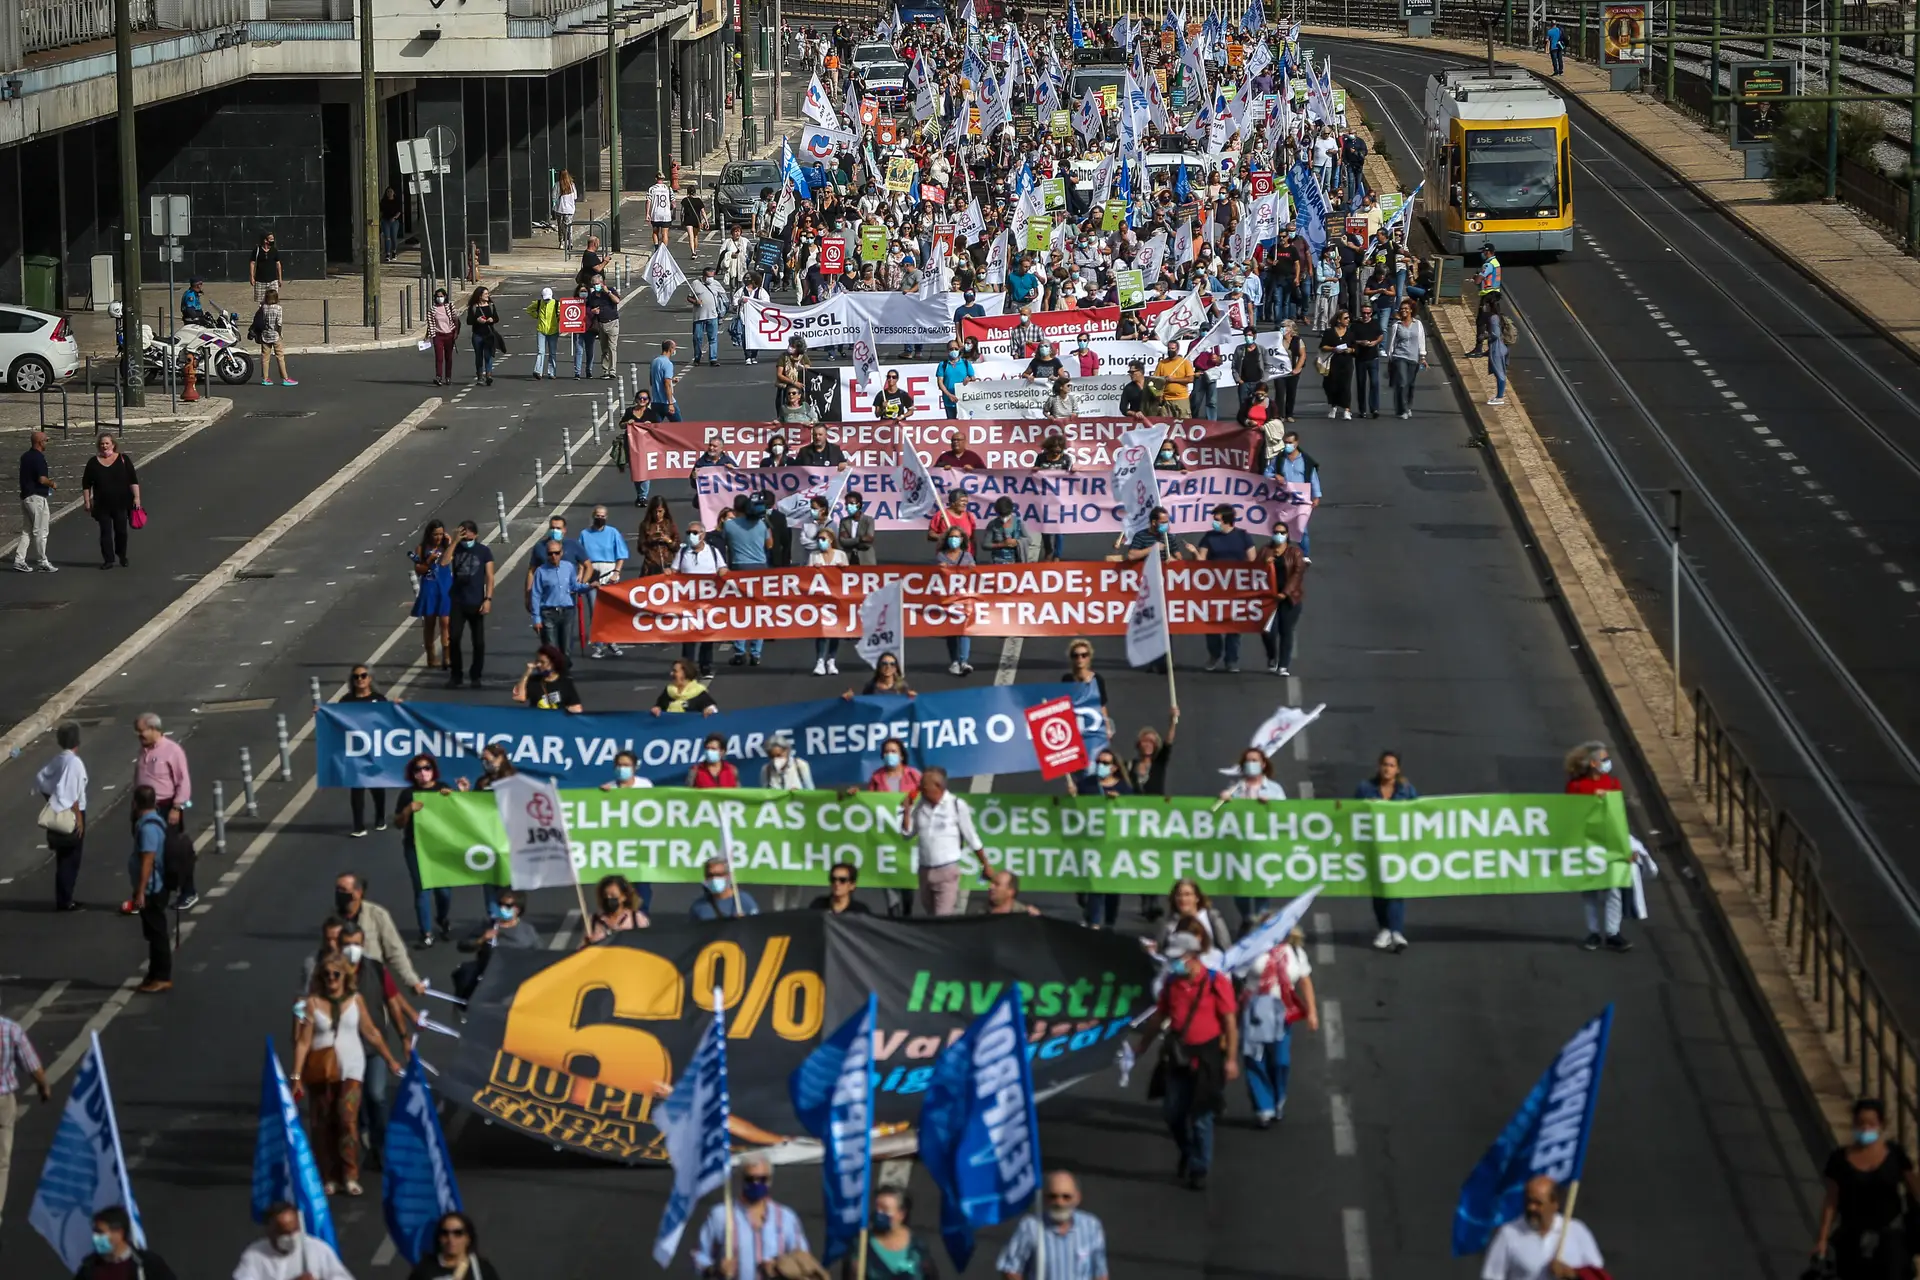 Manifestação nacional de professores e educadores convocada pela Federação Nacional dos Professores (FENPROF) para exigir que as condições de trabalho e os direitos dos professores sejam respeitados, em Lisboa.